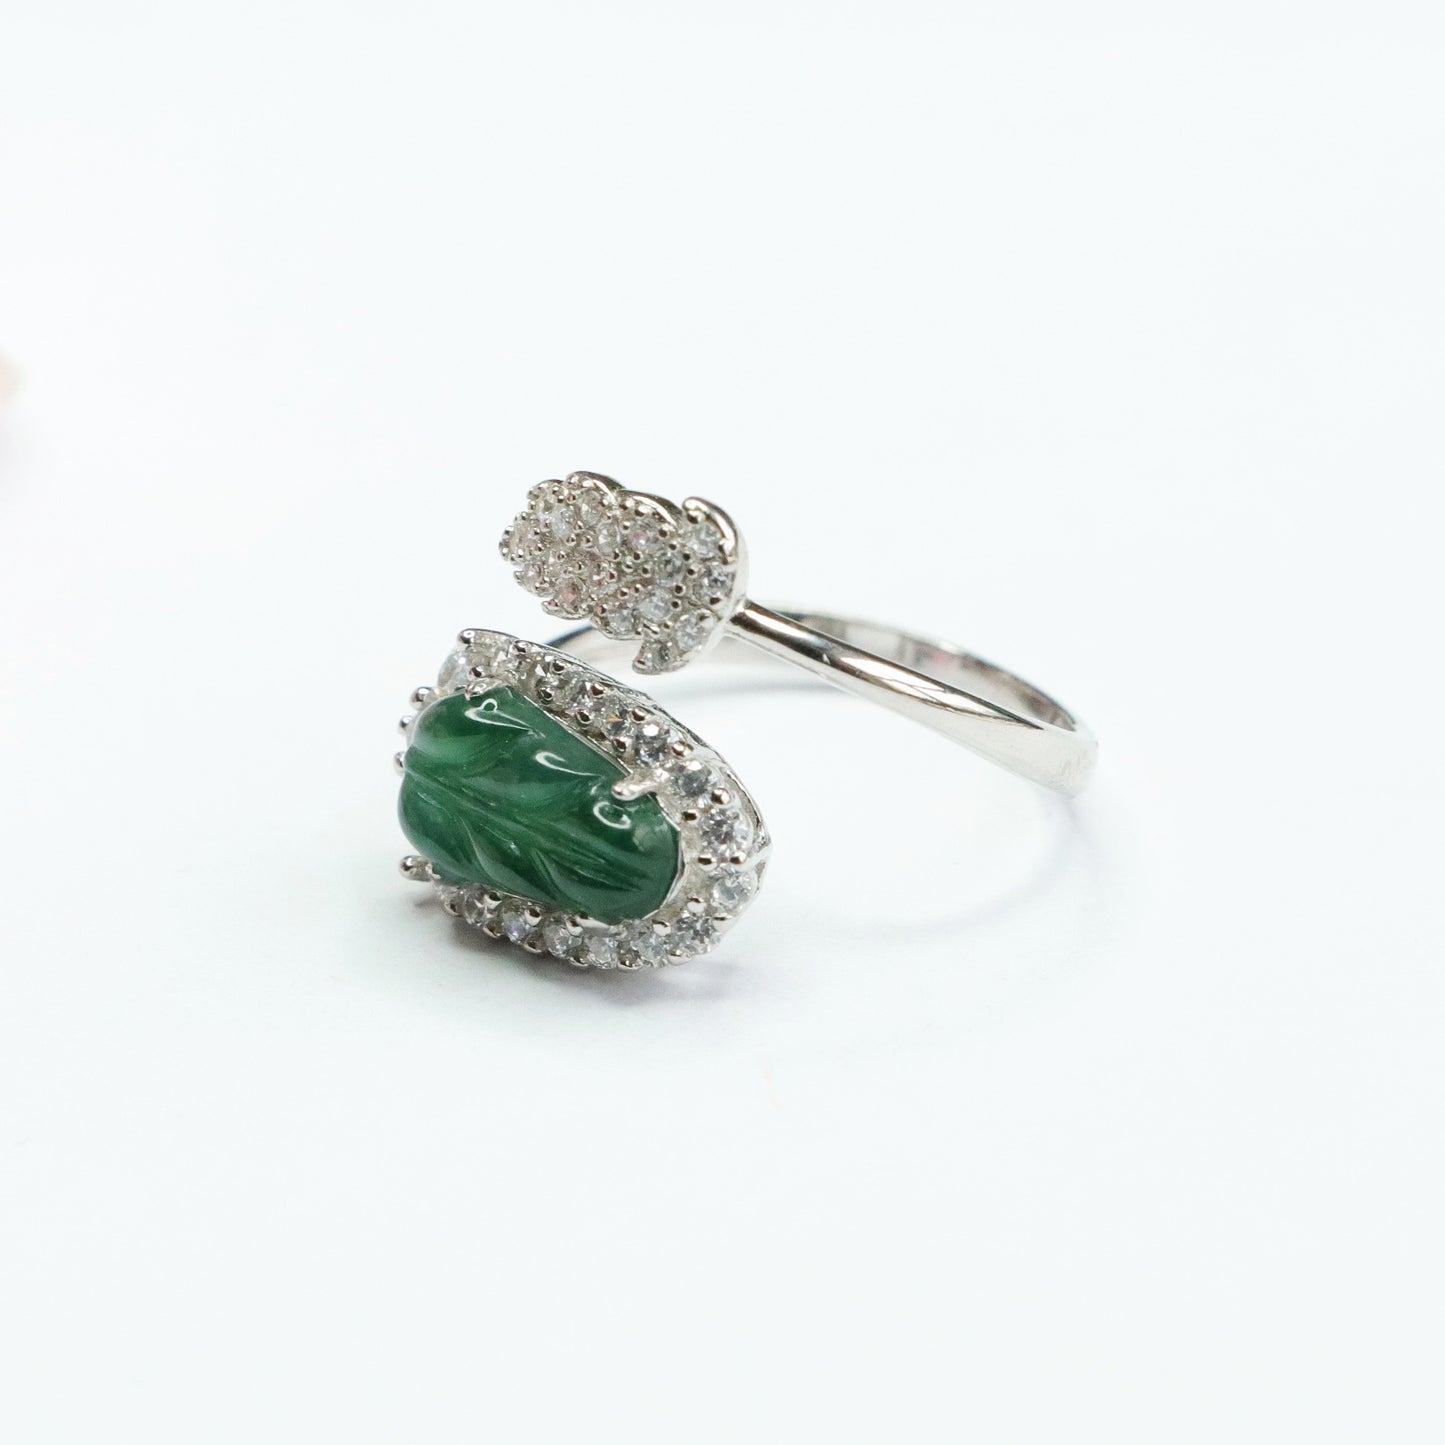 Emperor Green Jade Leaf Sterling Silver Ring